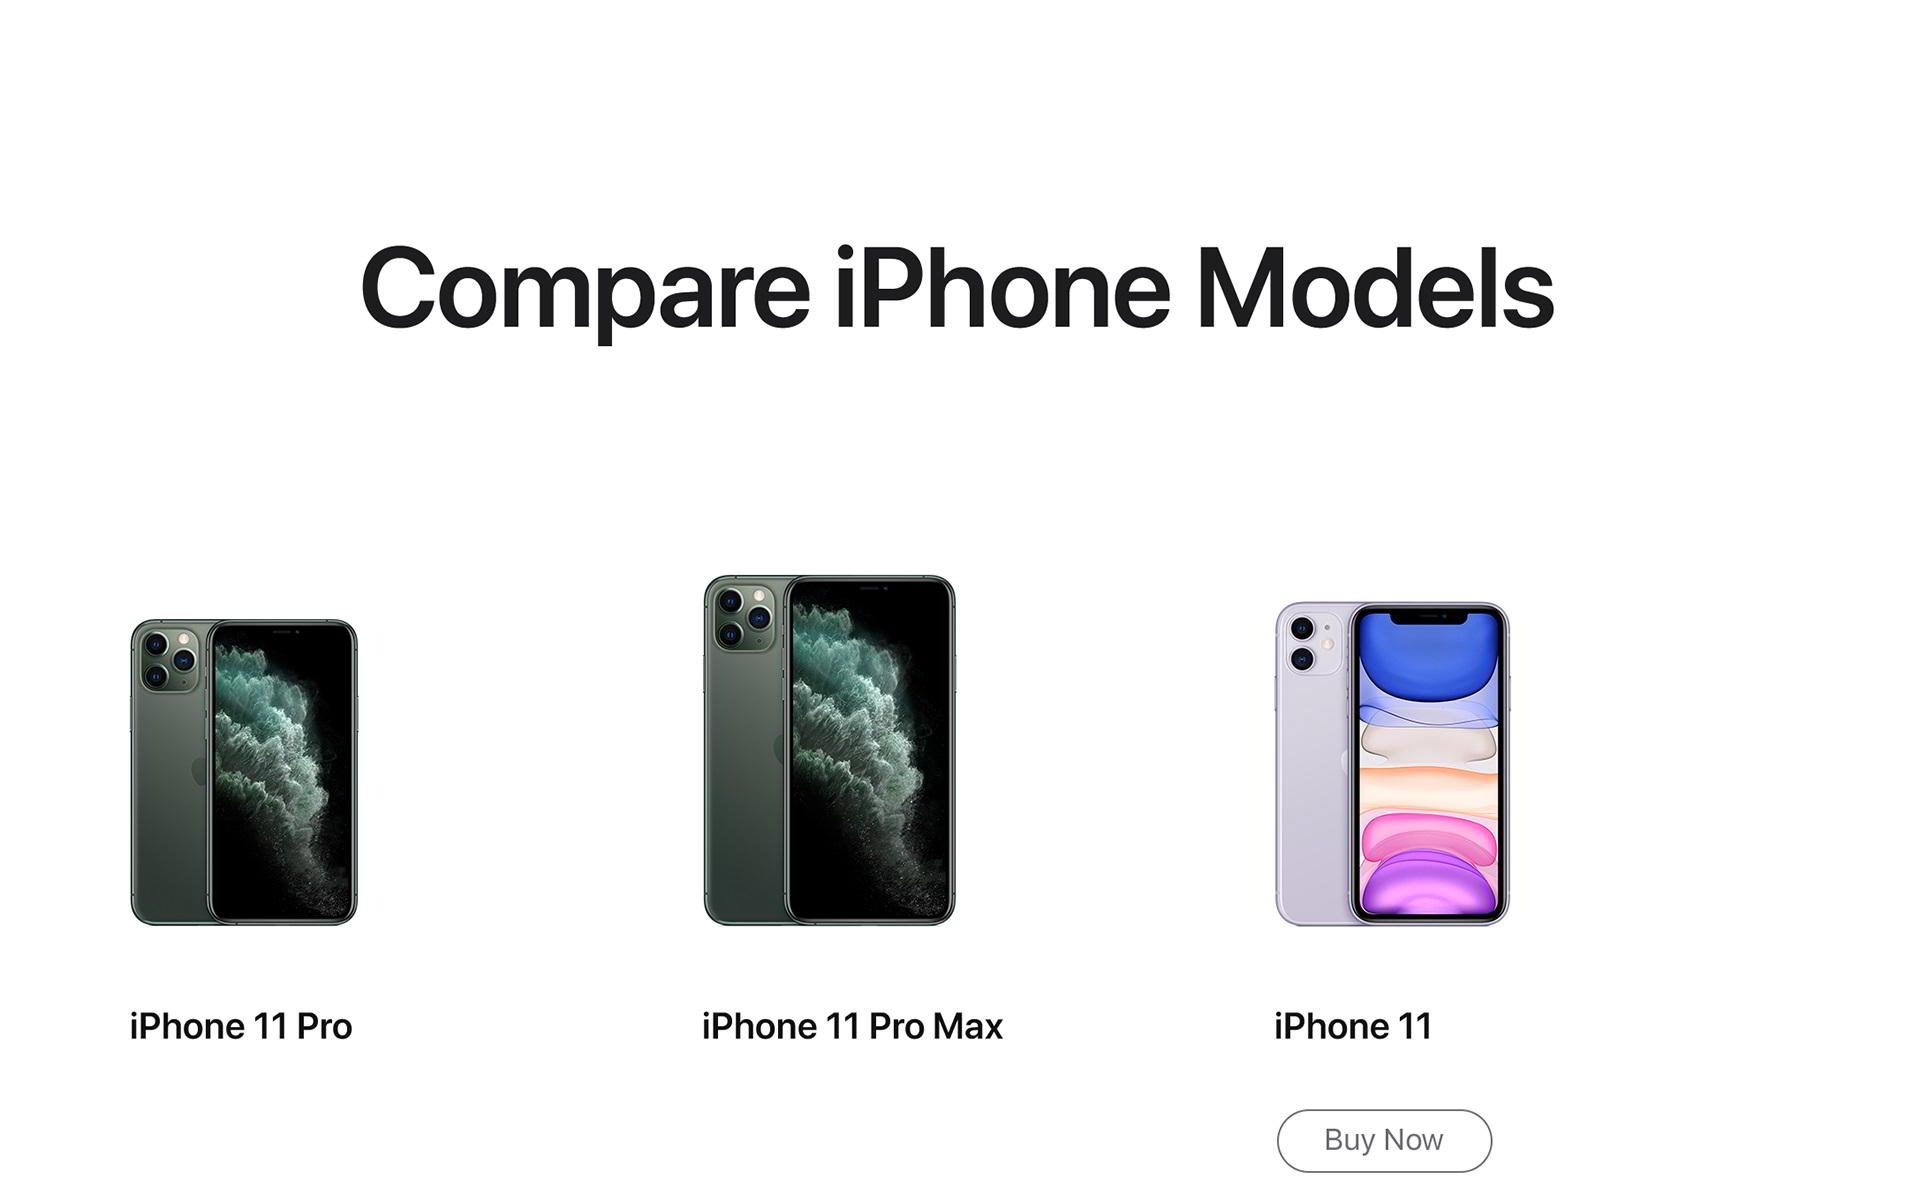 apple-iphone11-price-uae-etisalat-comparison-1